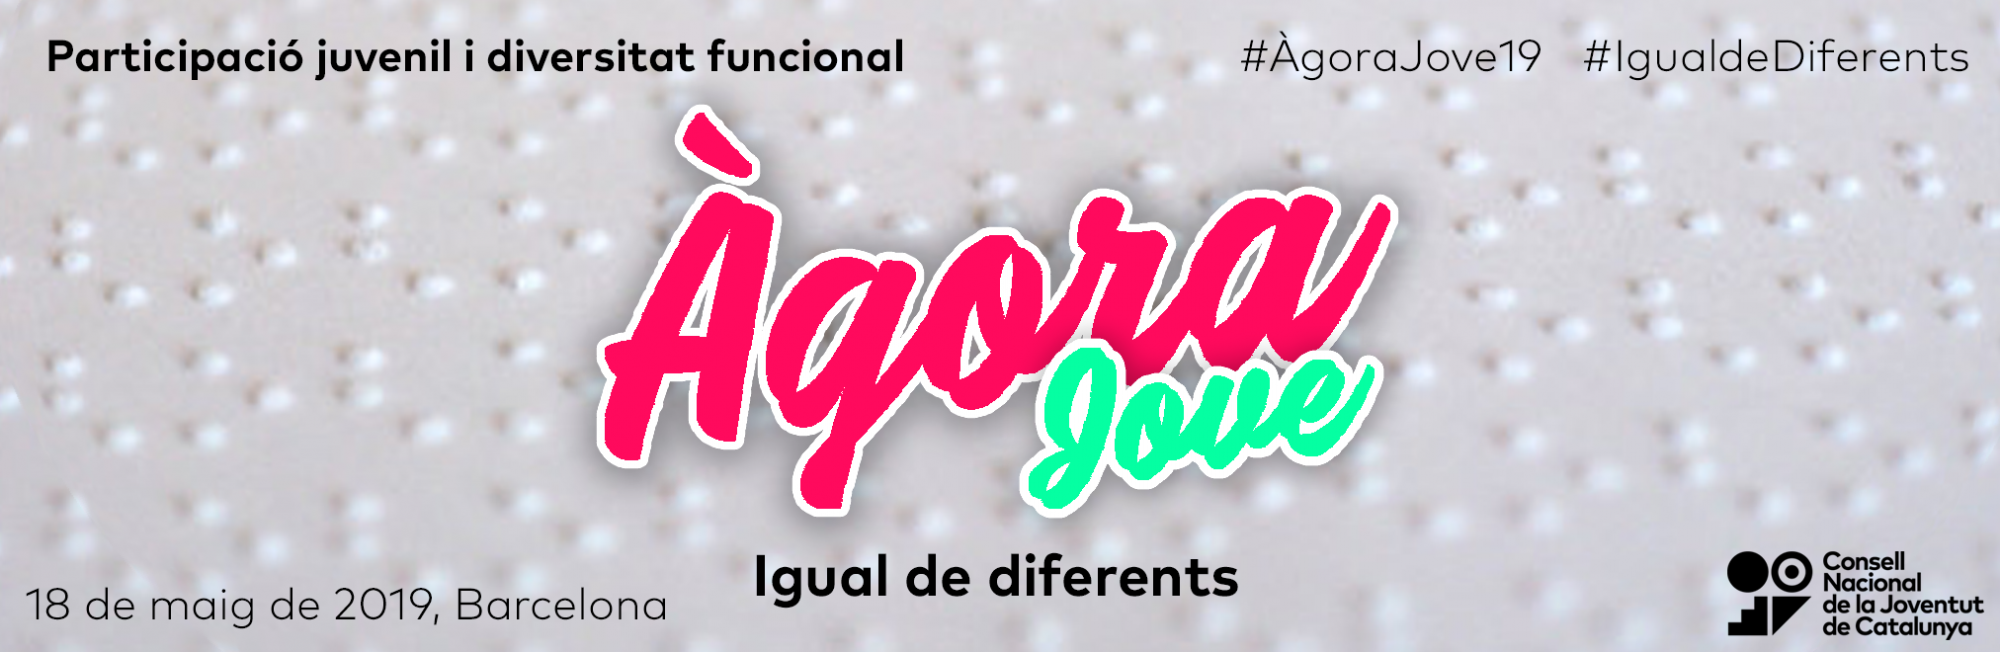 El próximo sábado 18 de mayo llega el ágora Joven 2019 bajo el lema: Igual de diferentes. Participación, asociacionismo y diversidad funcional.